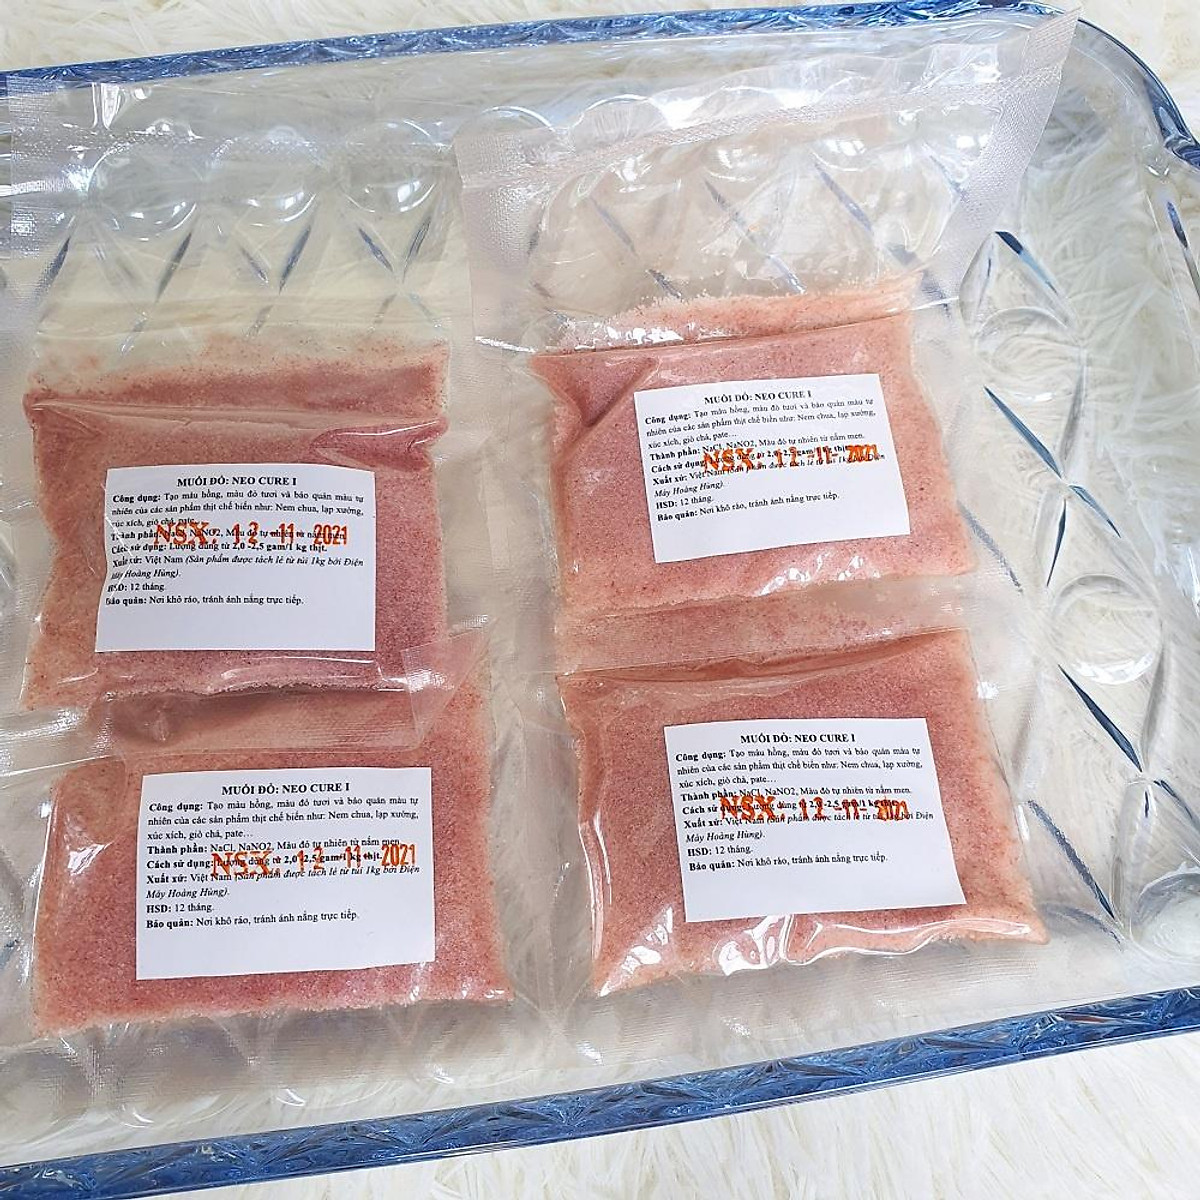 Muối đỏ Neo Cure I- Giữ màu đỏ tự nhiên cho các sản phẩm từ thịt như lạp xưởng tách lẻ gói hút chân không